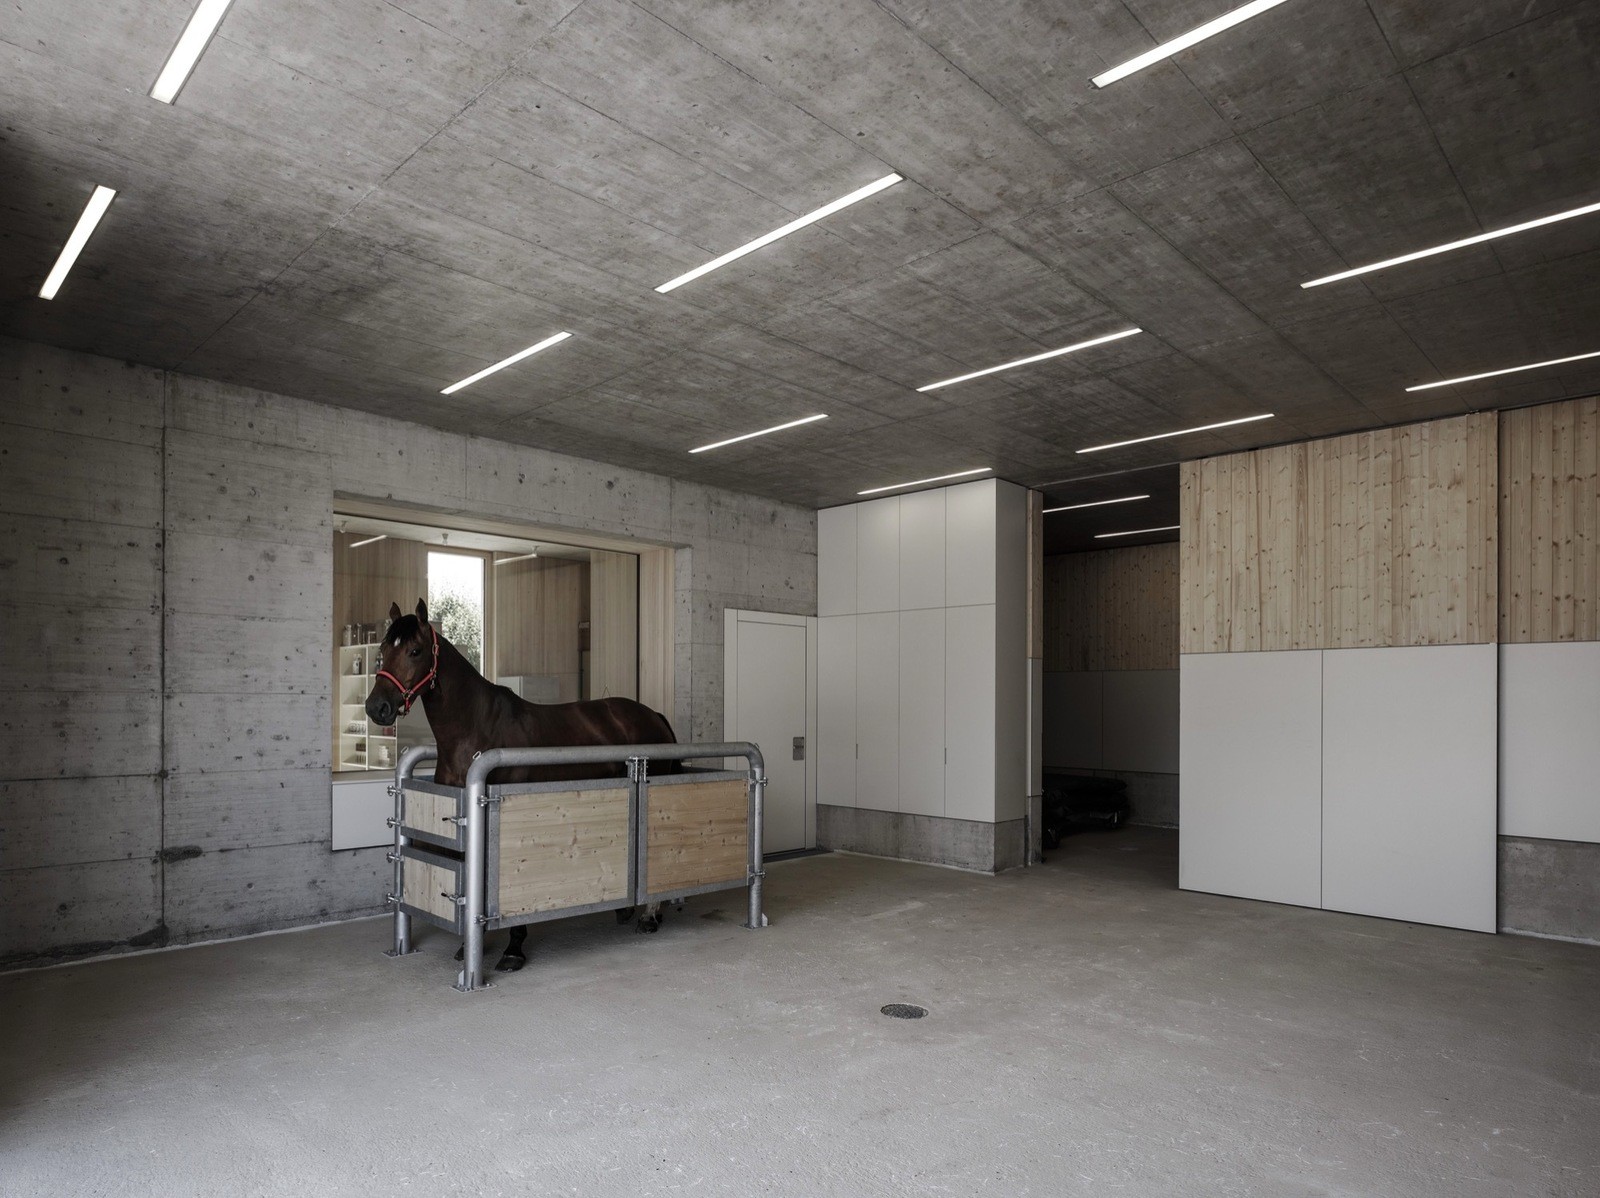 Ветеринарная лечебница для лошадей в Австрии